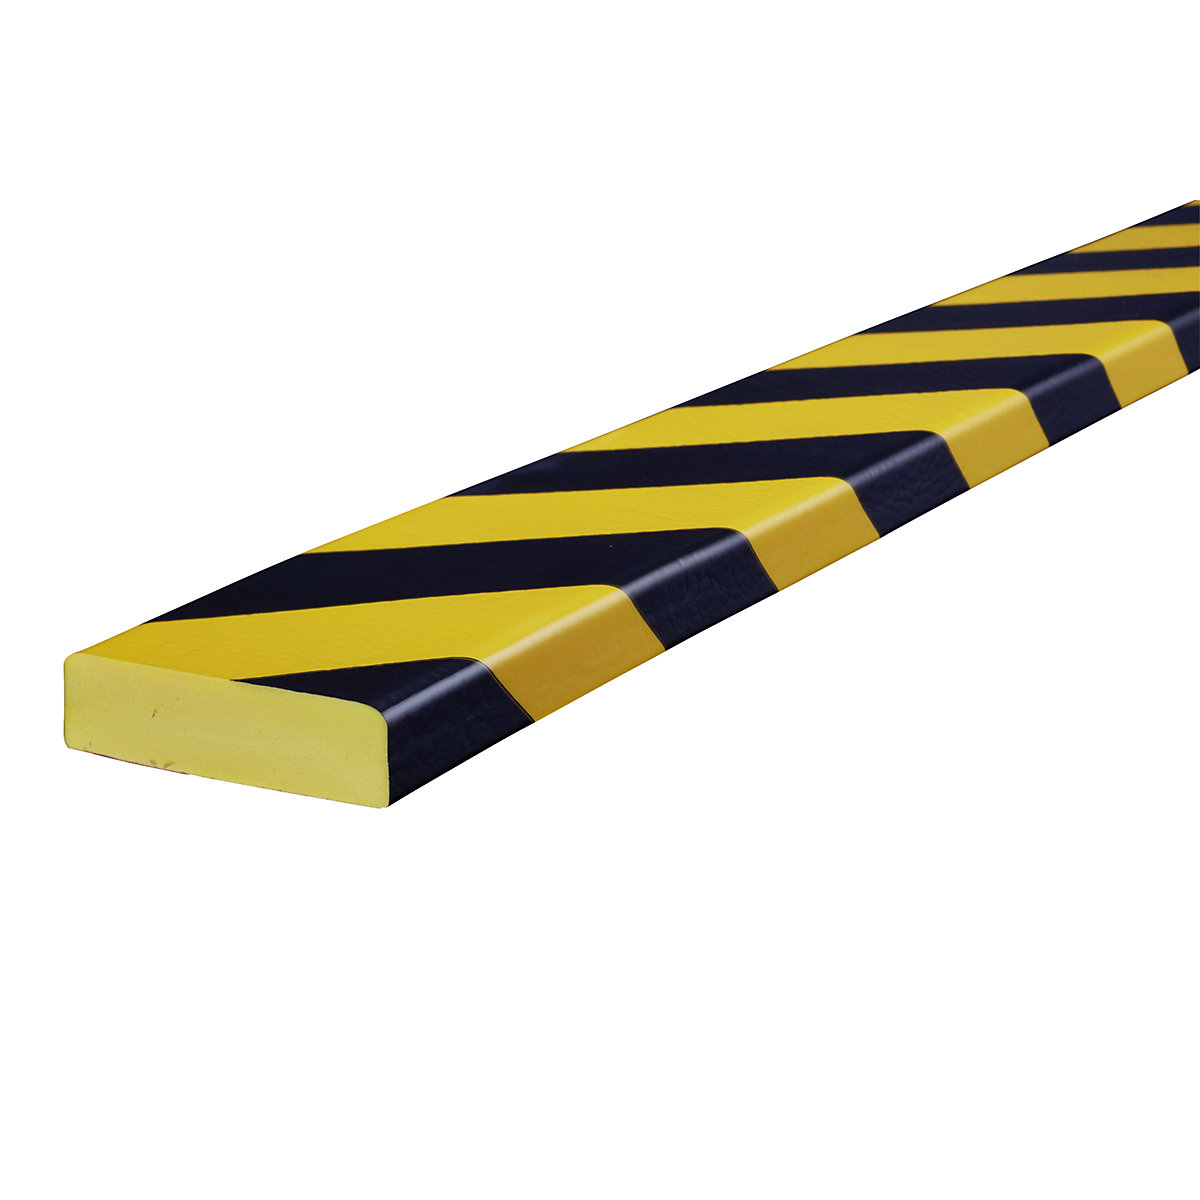 SHG – Proteção de superfícies Knuffi®, tipo S, unidade de 1 m, amarelo/preto